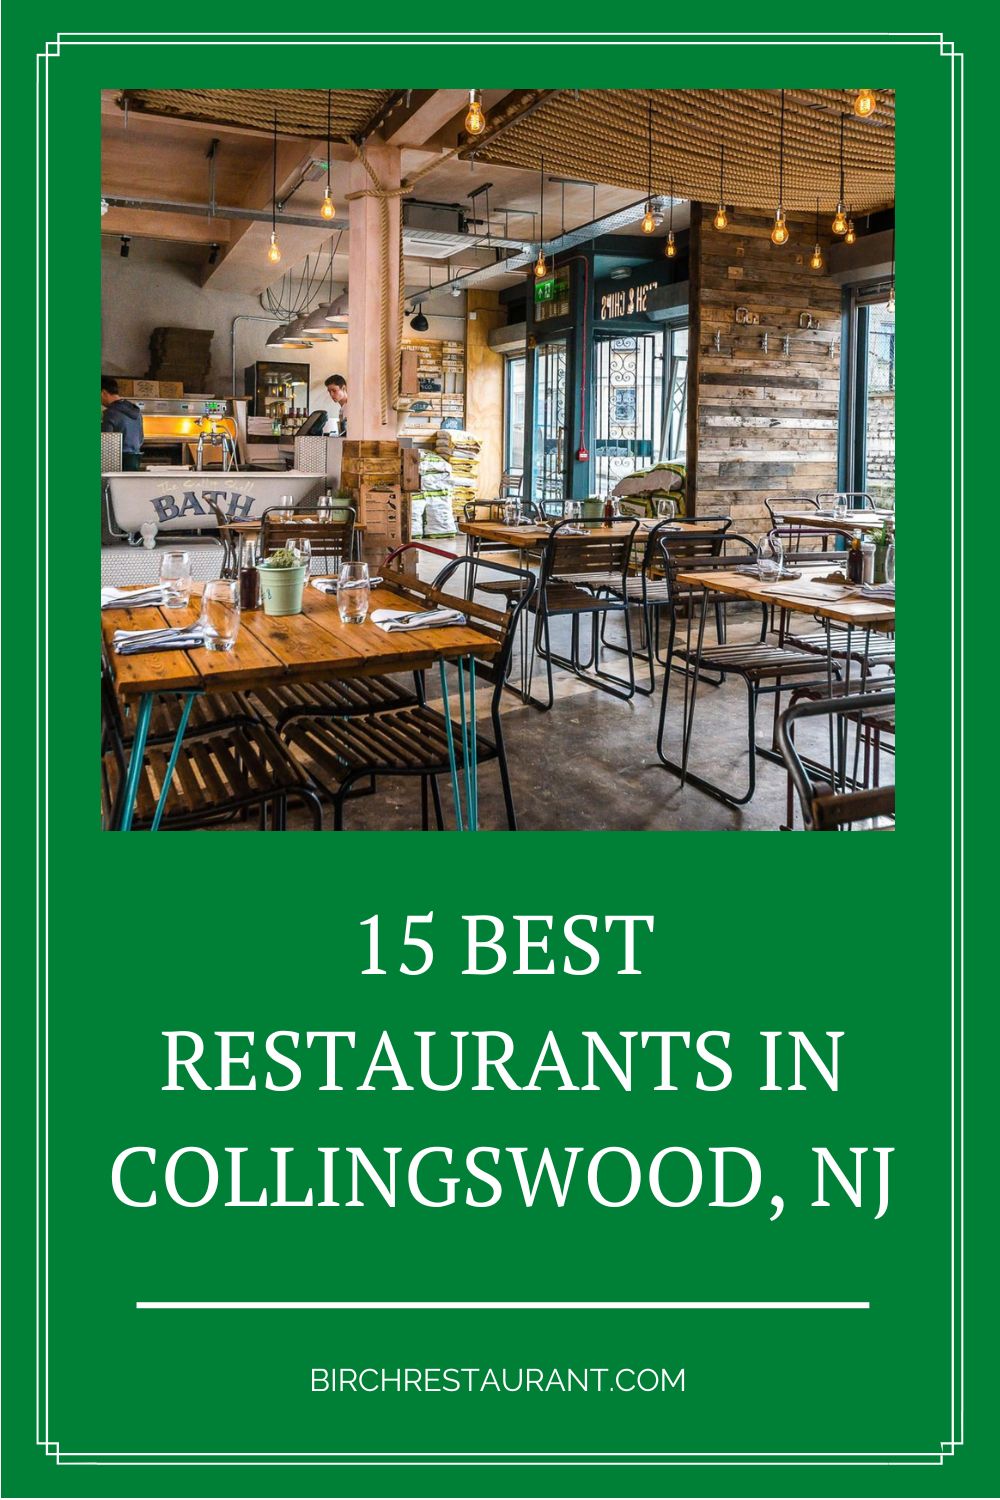 Best Restaurants in Collingswood NJ